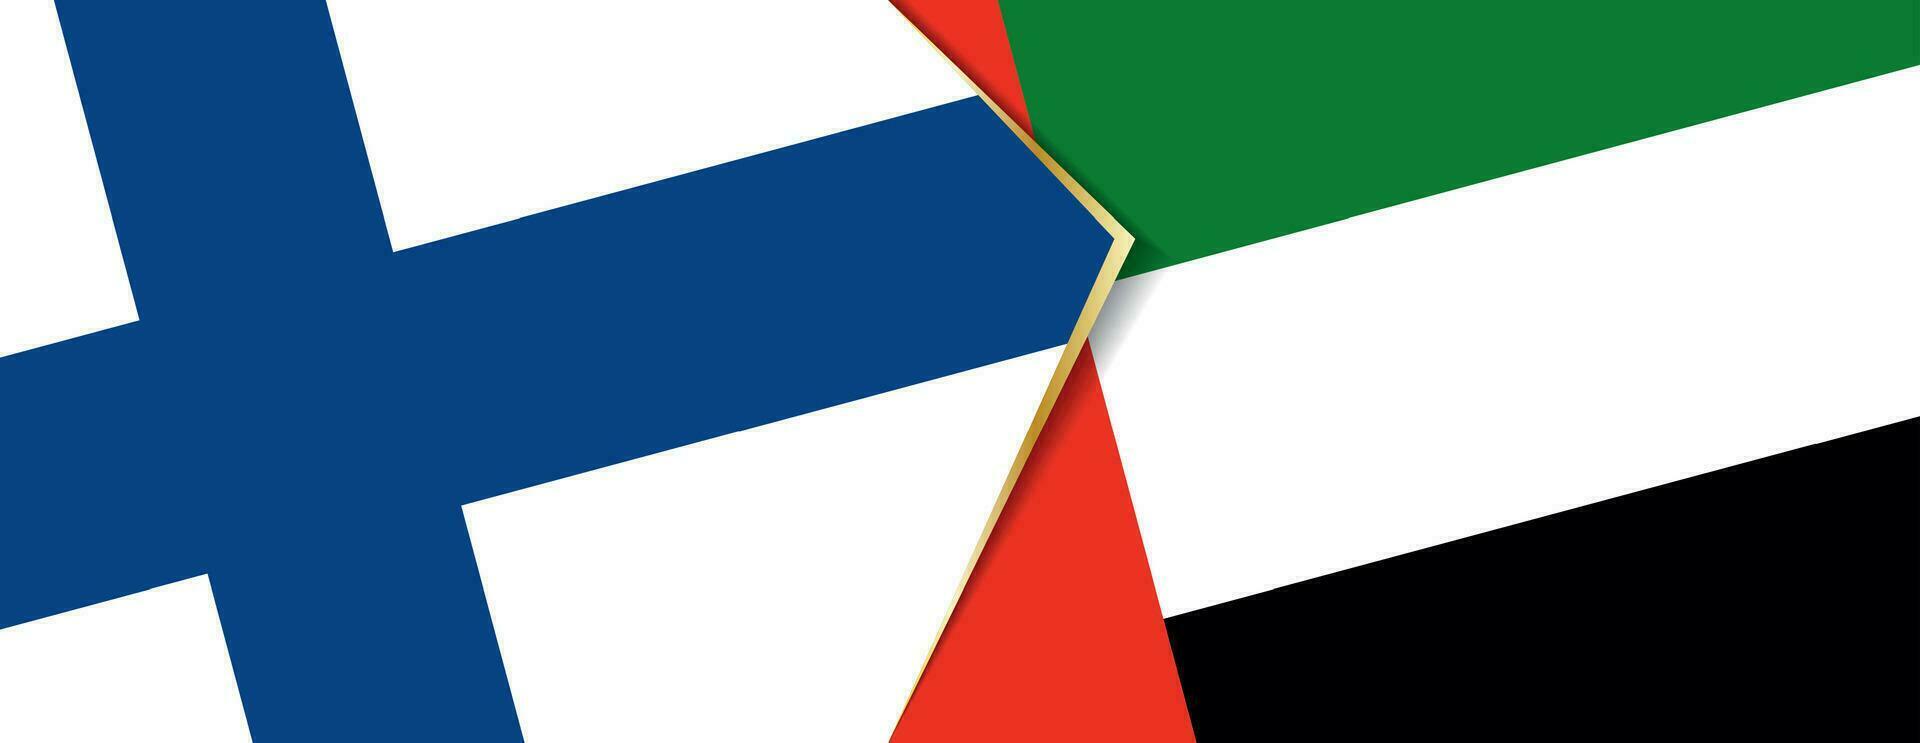 finland och förenad arab emirates flaggor, två vektor flaggor.